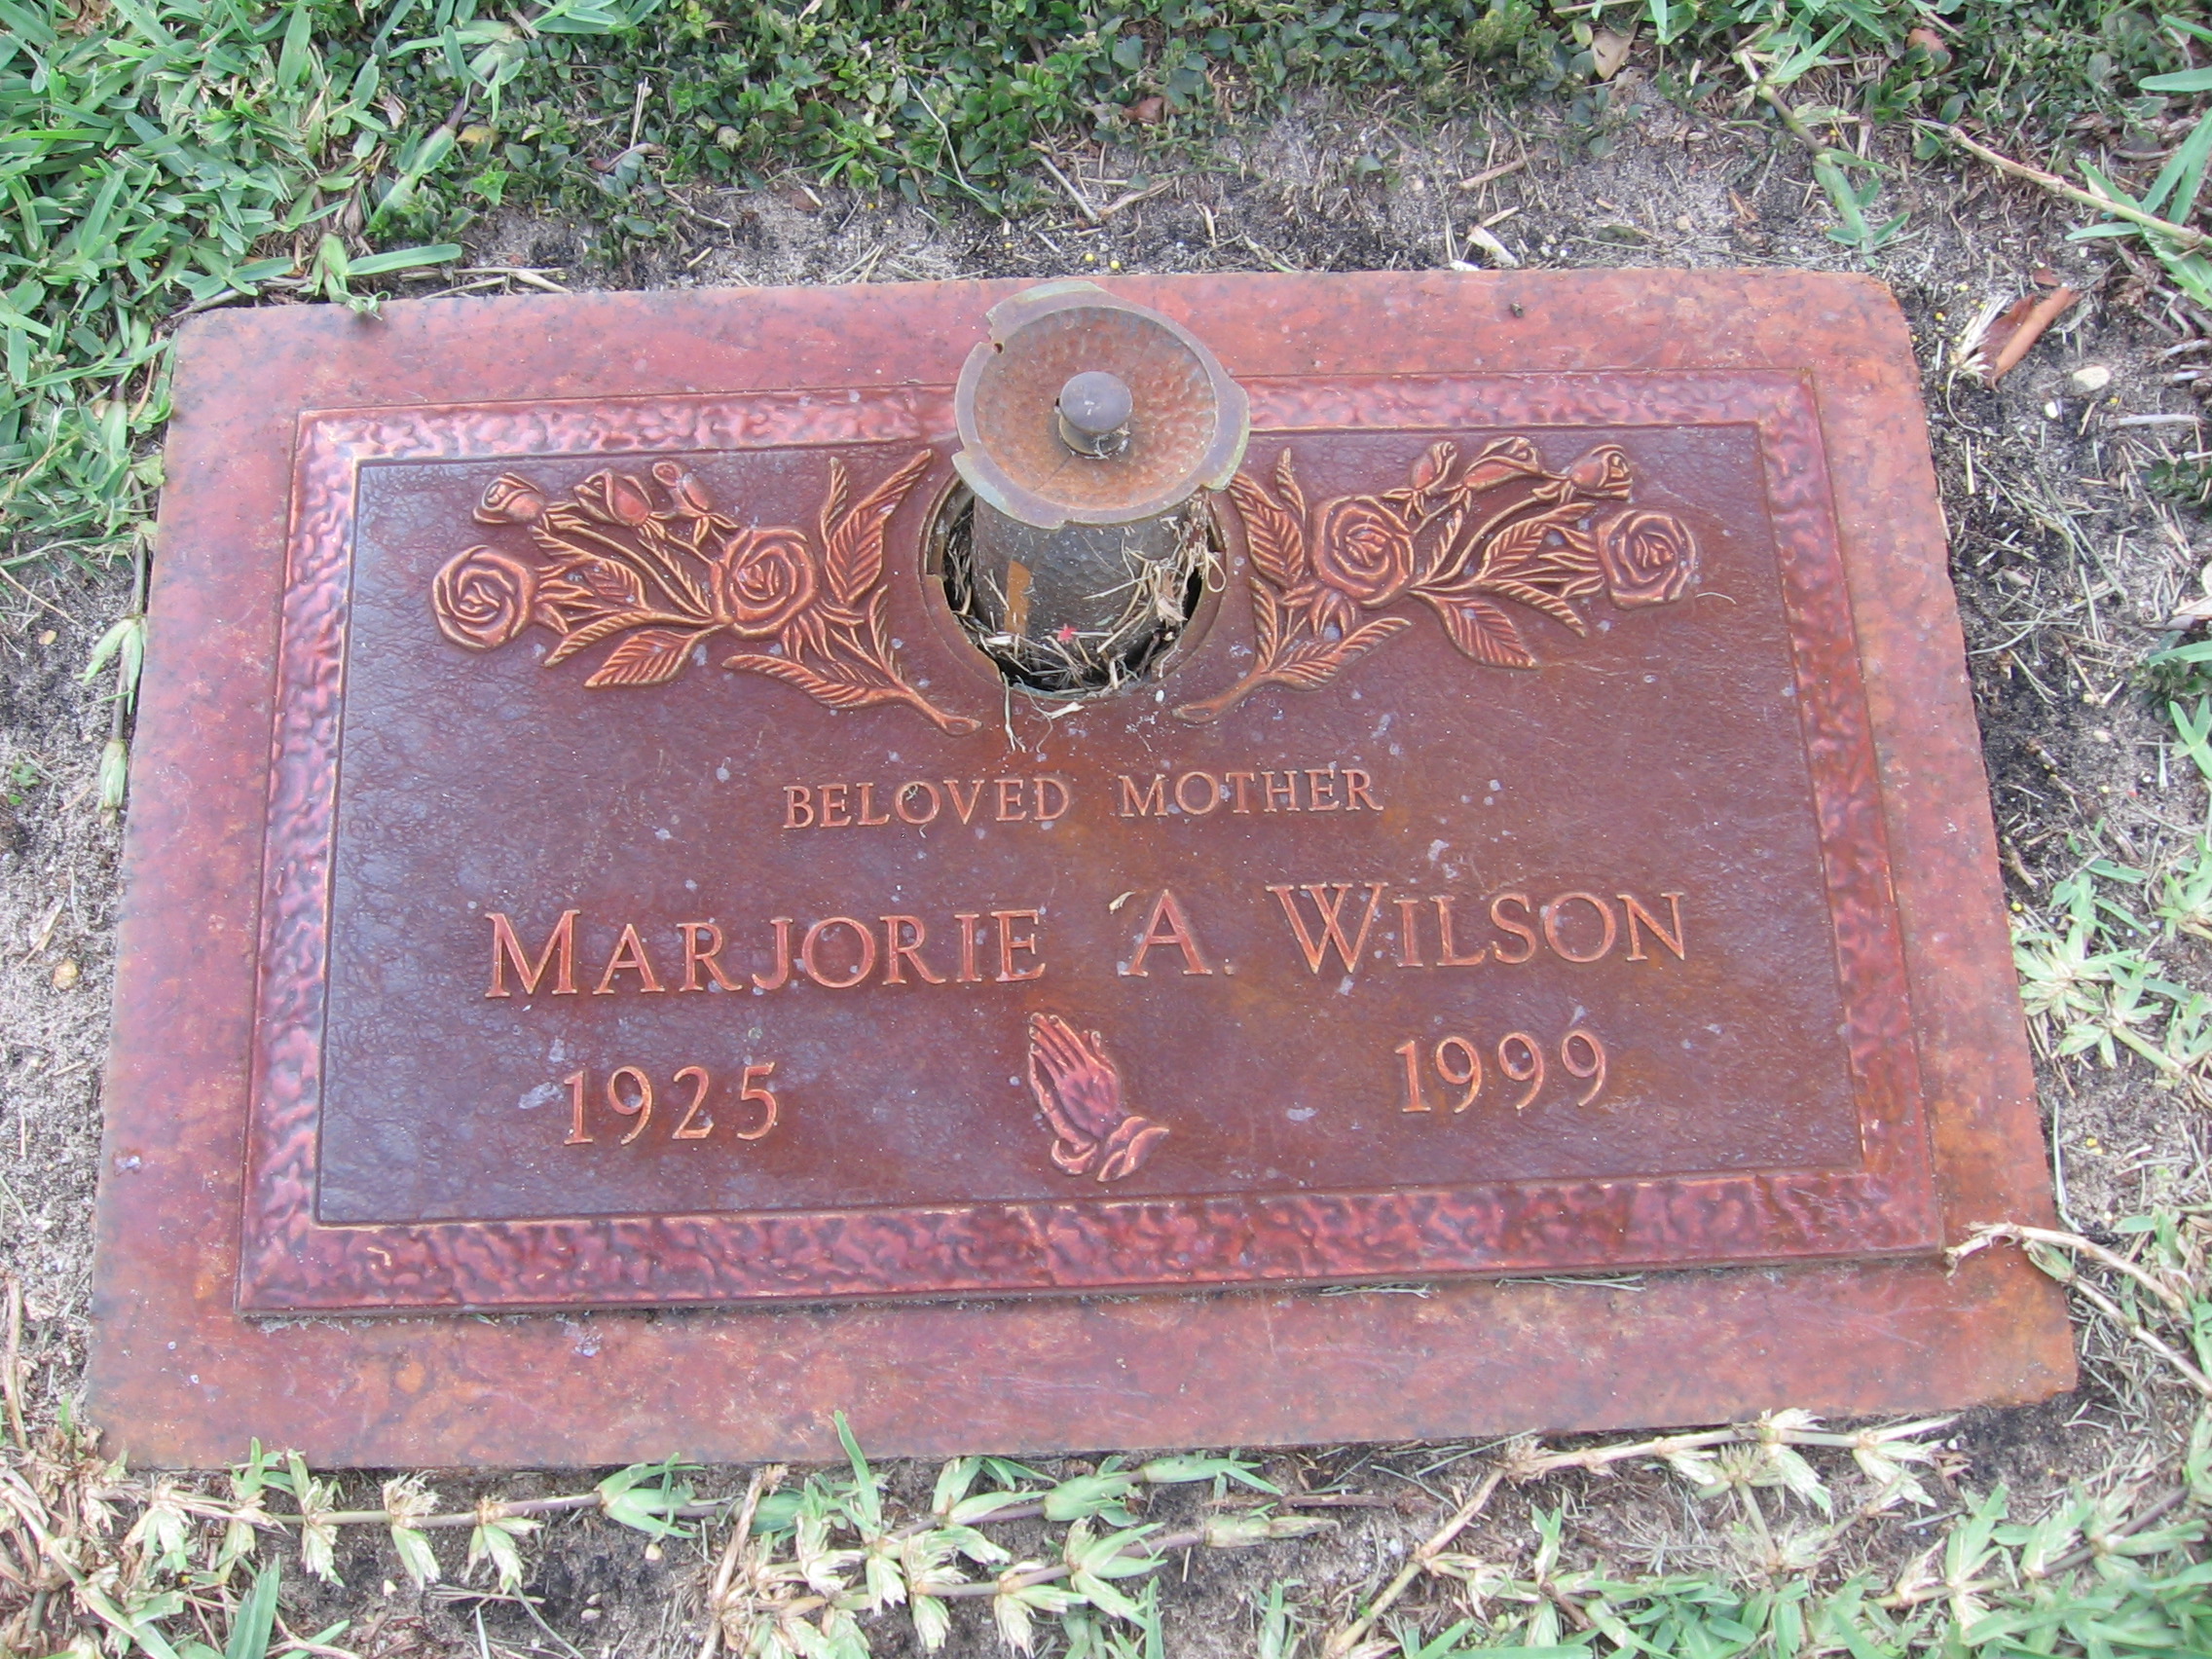 Marjorie A Wilson